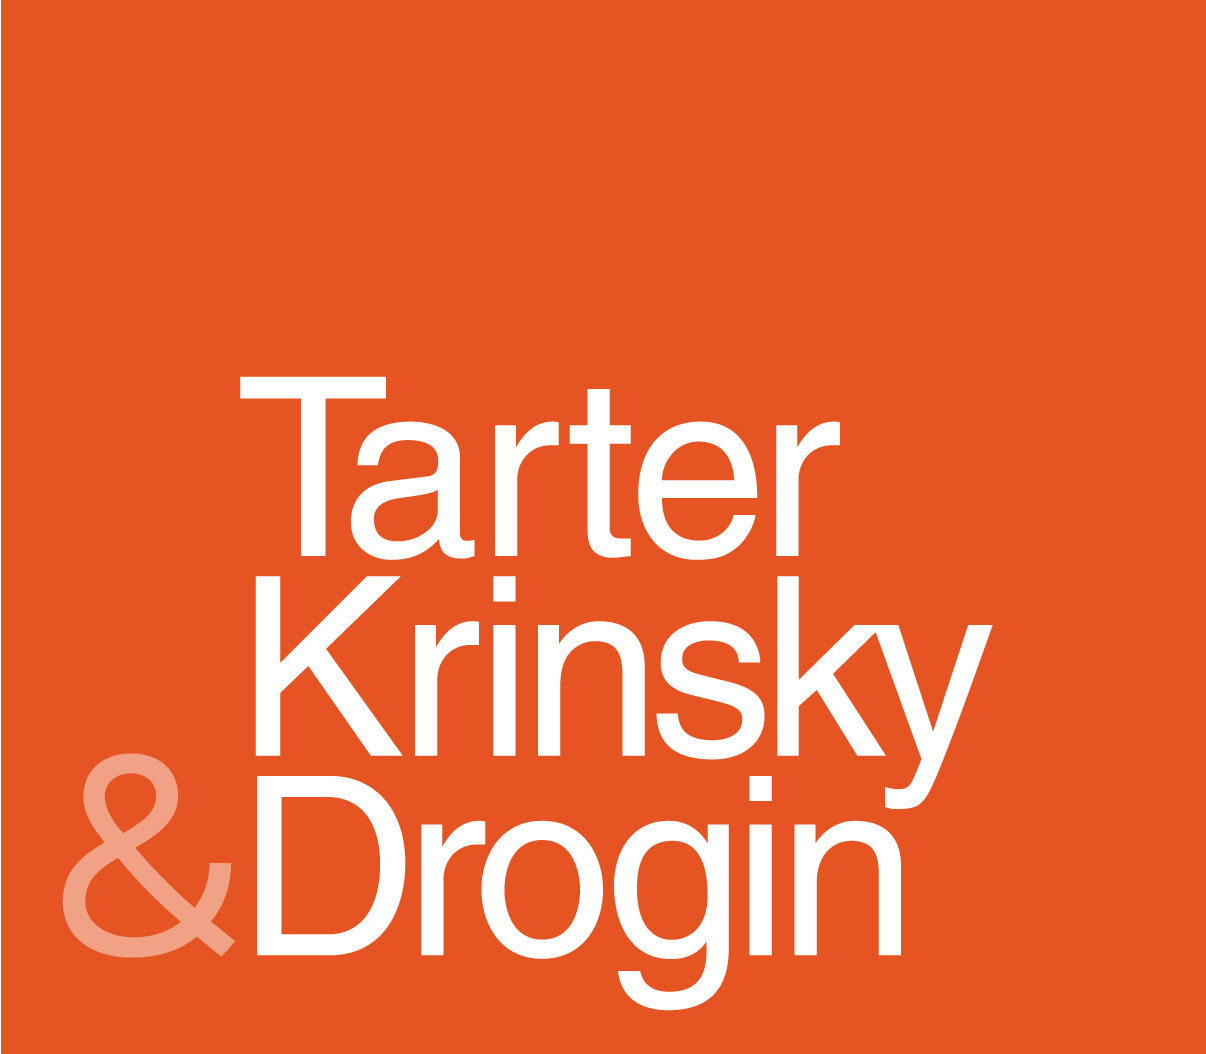 Tarter Krinsky & Drogin